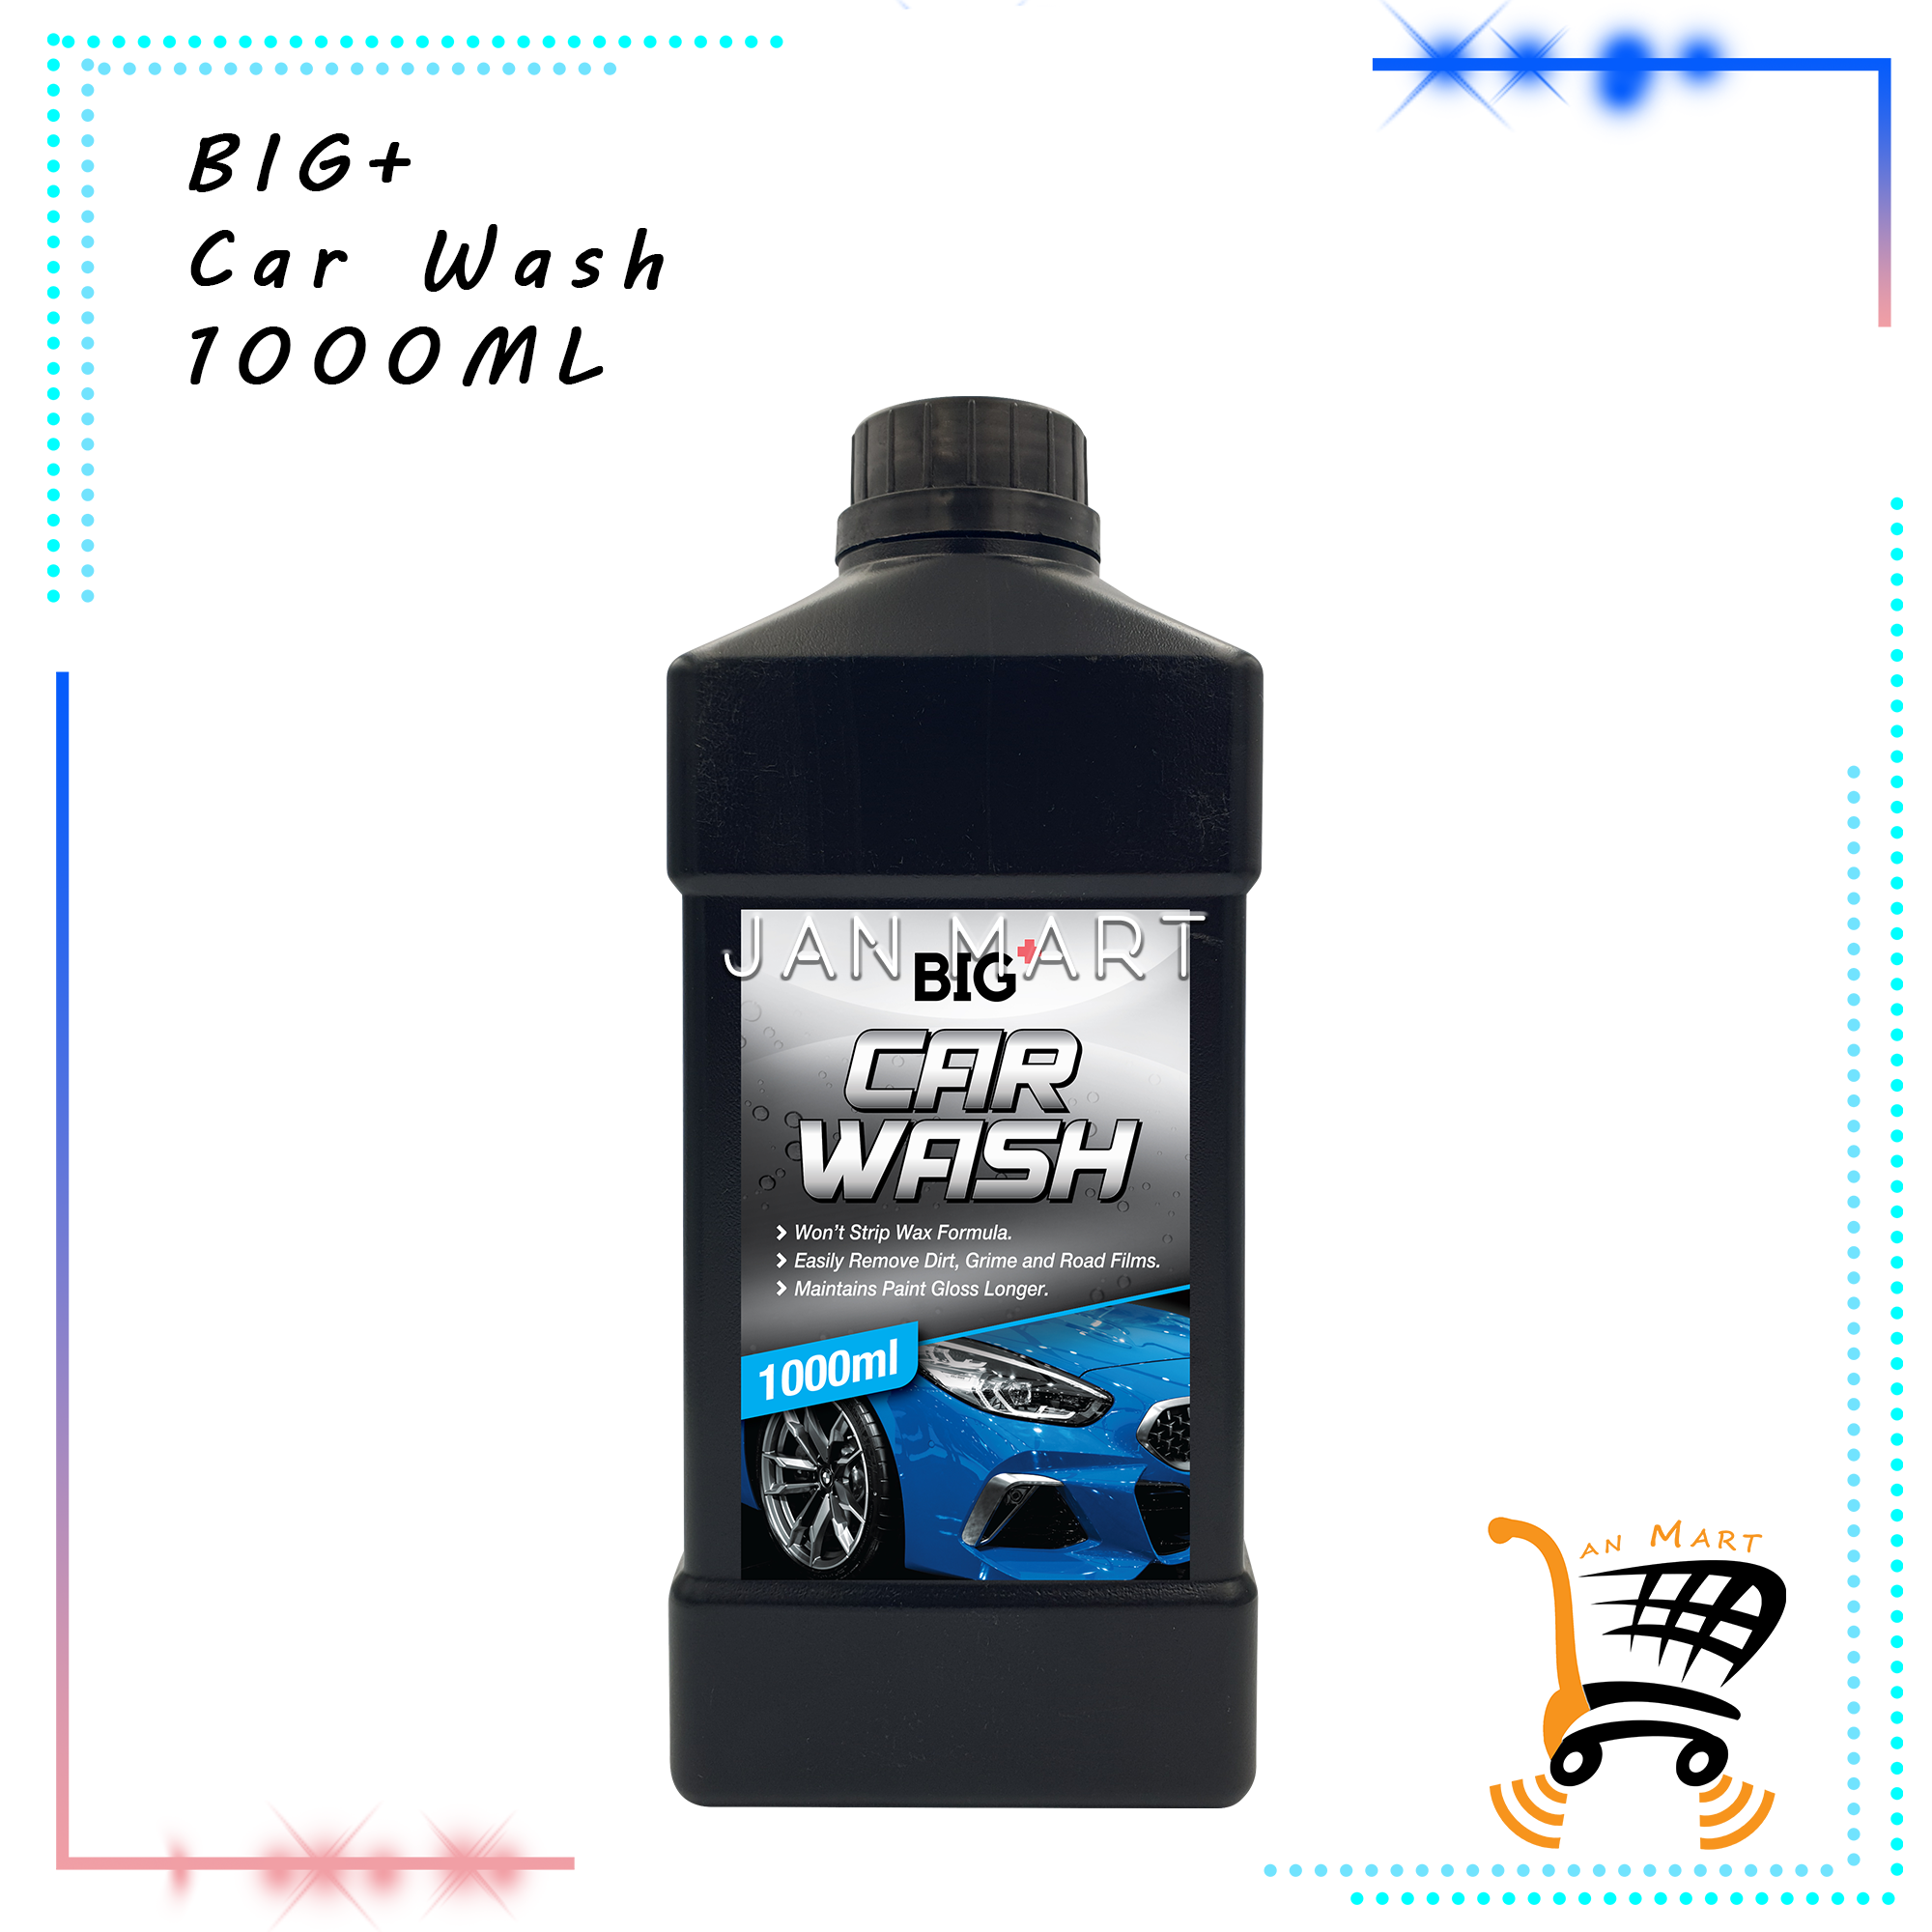 BIG+ Car Wash 1000ML